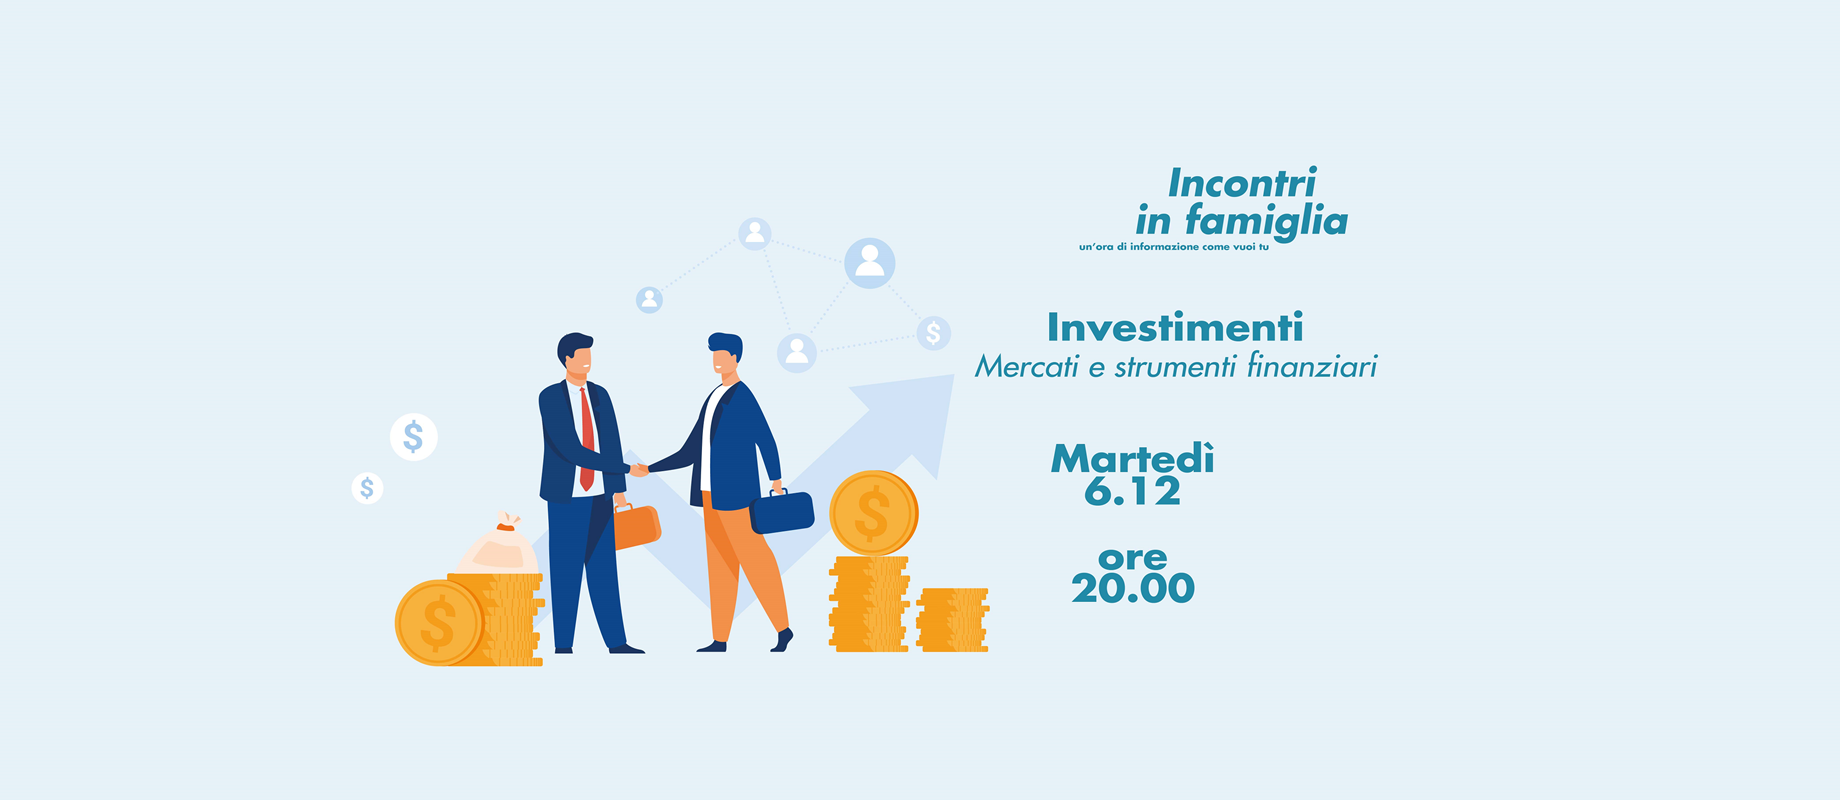 Investimenti : mercati finanziari e strumenti 